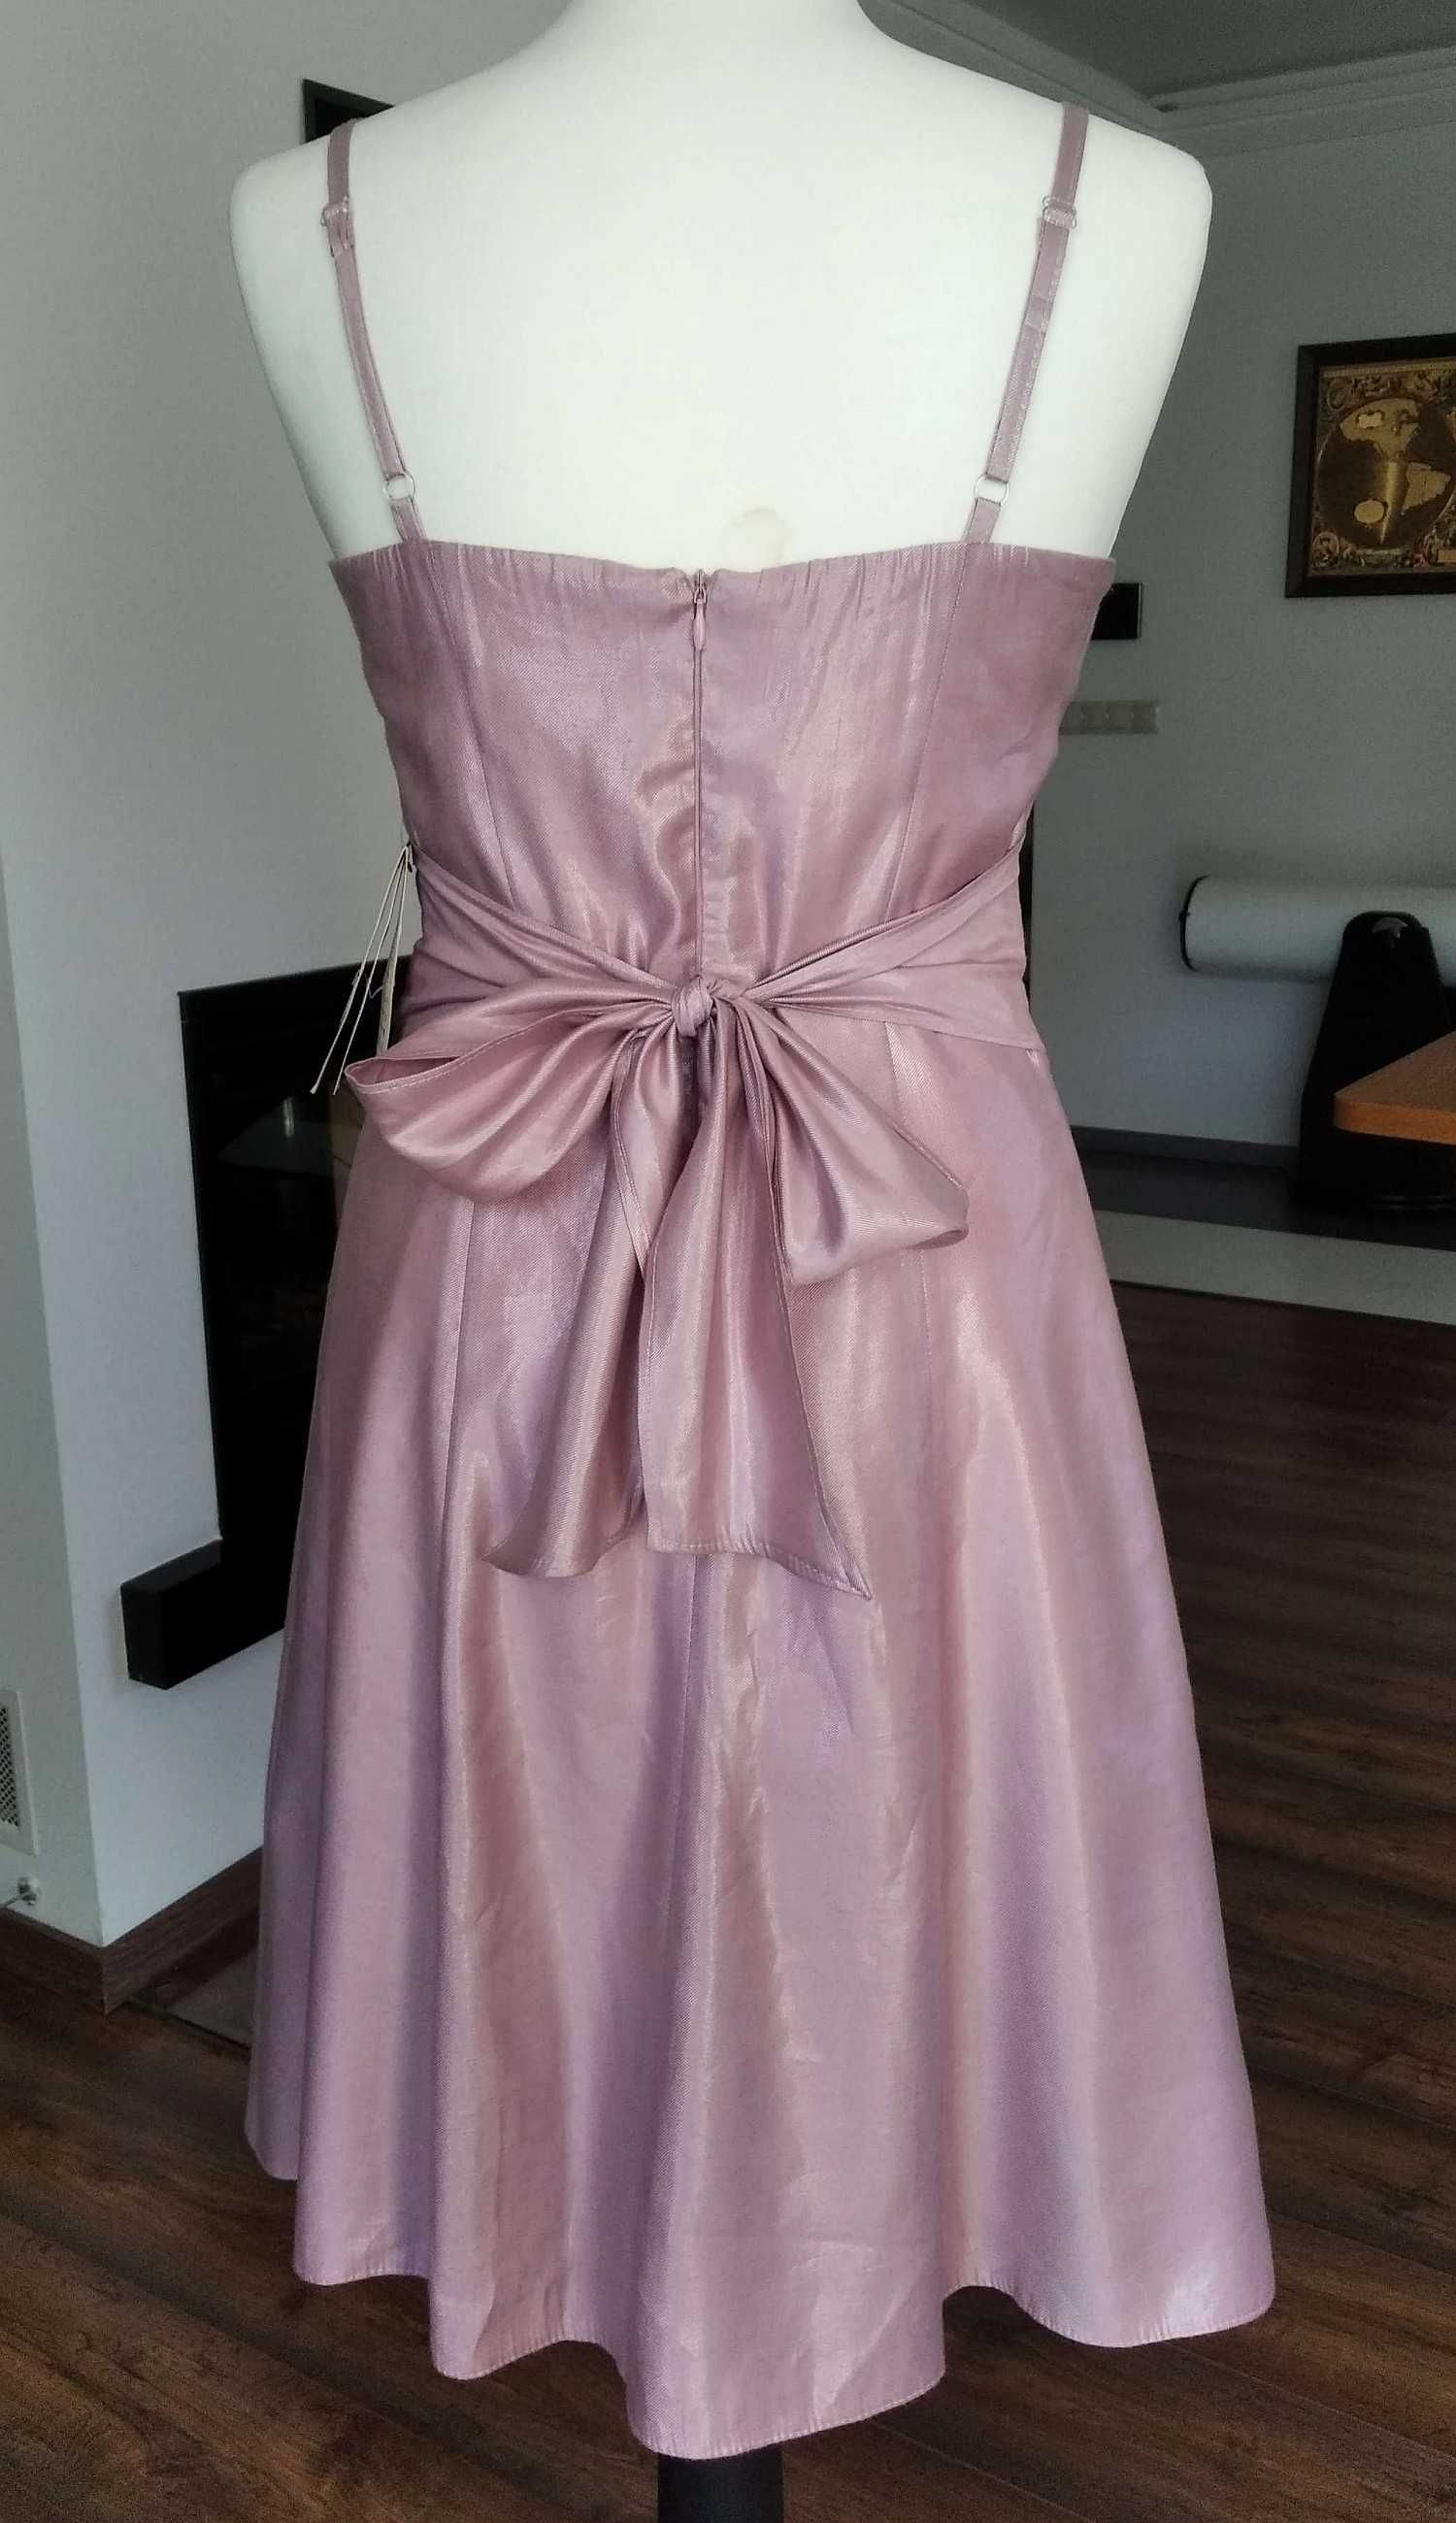 Nowa różowa sukienka Venitti pudrowy indyjski róż midi rozm. 38 / M